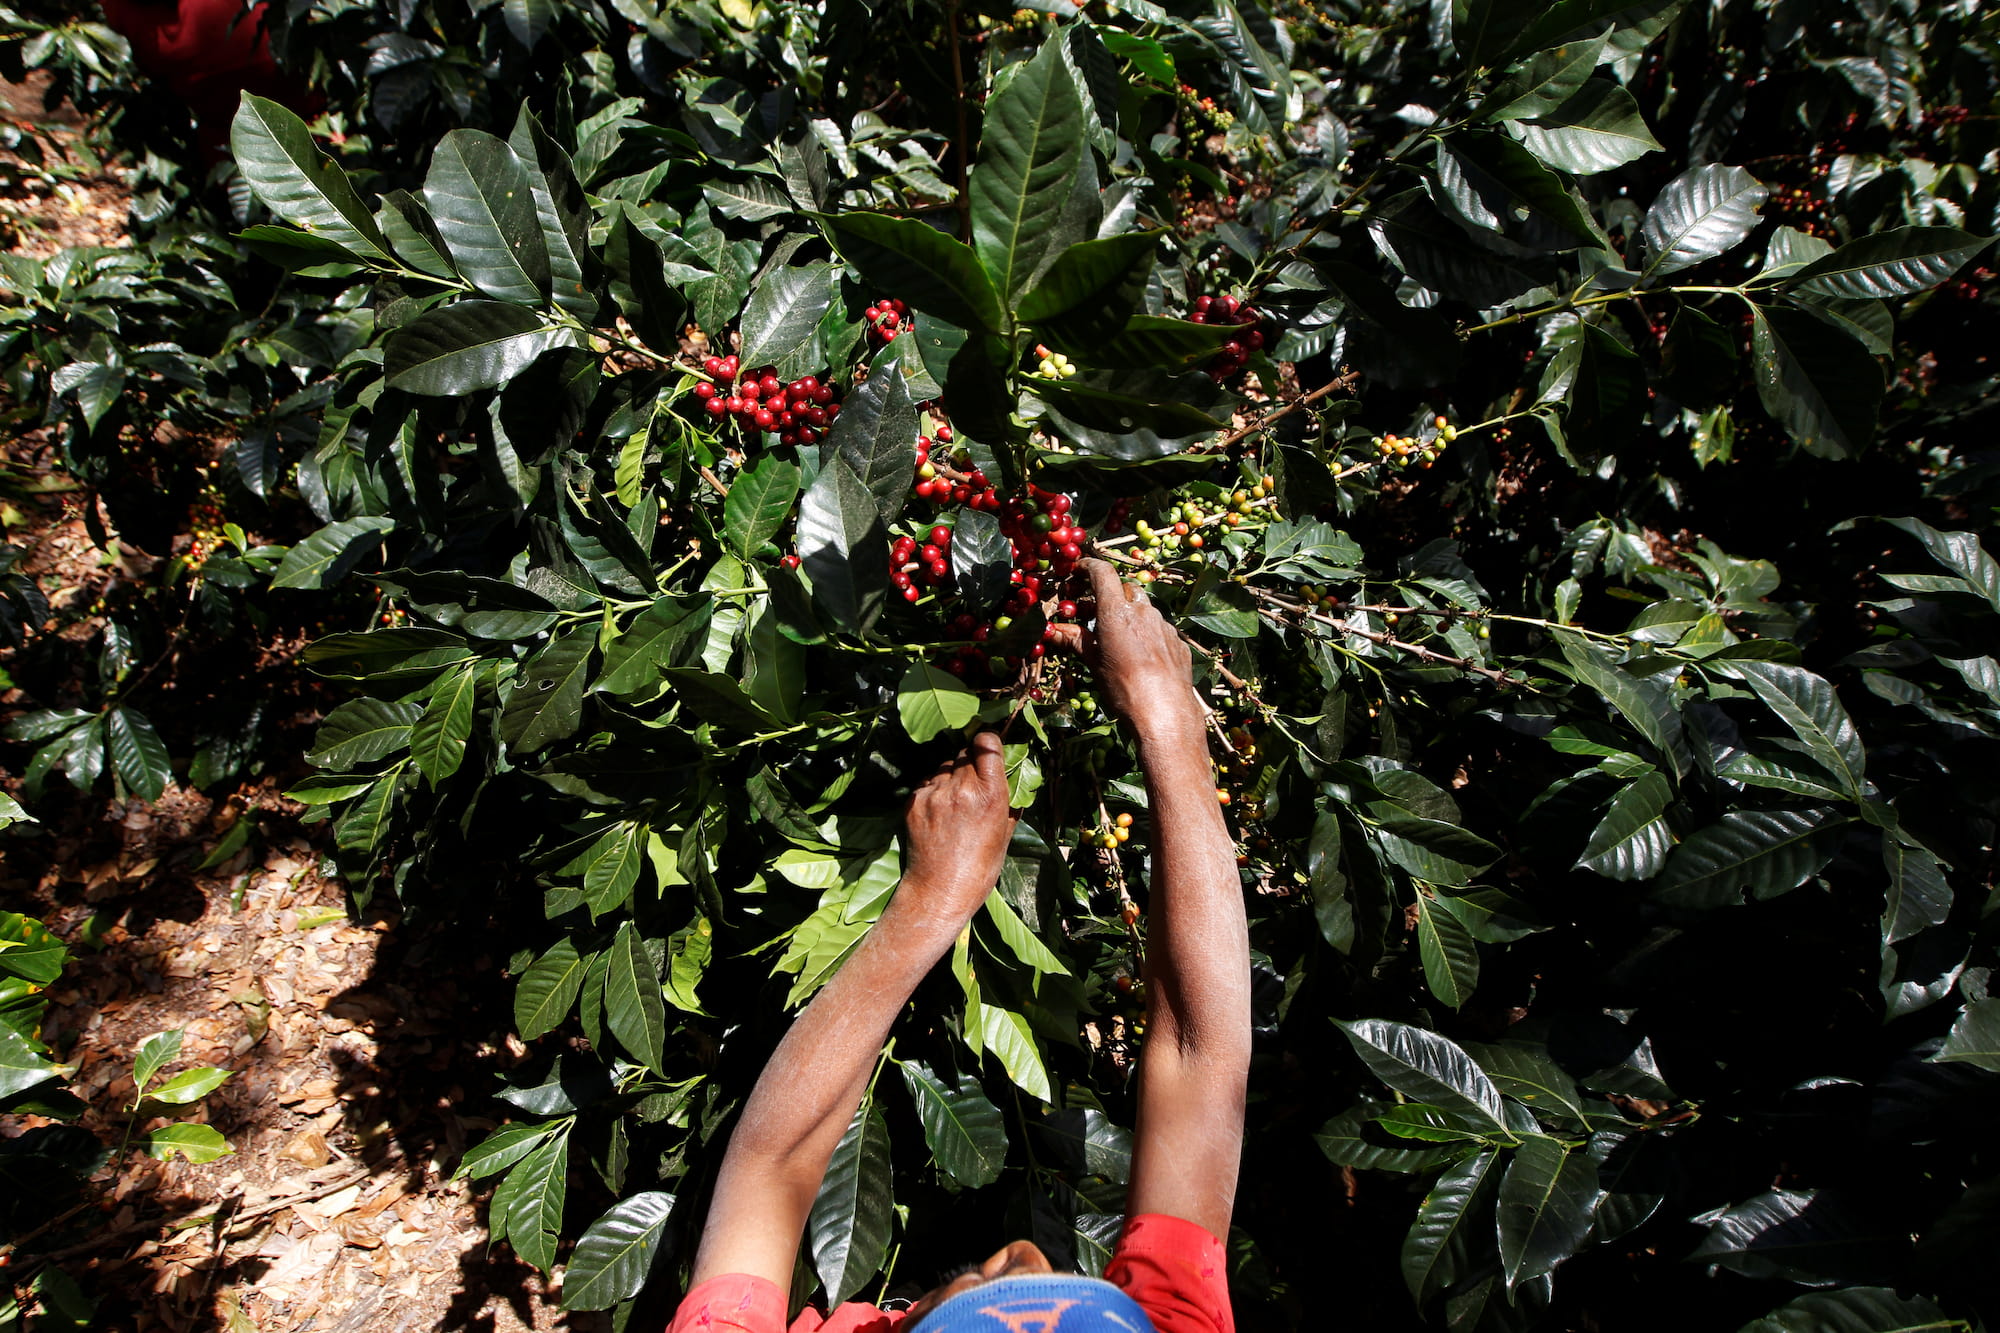 siembra de café en honduras agricultor 2022